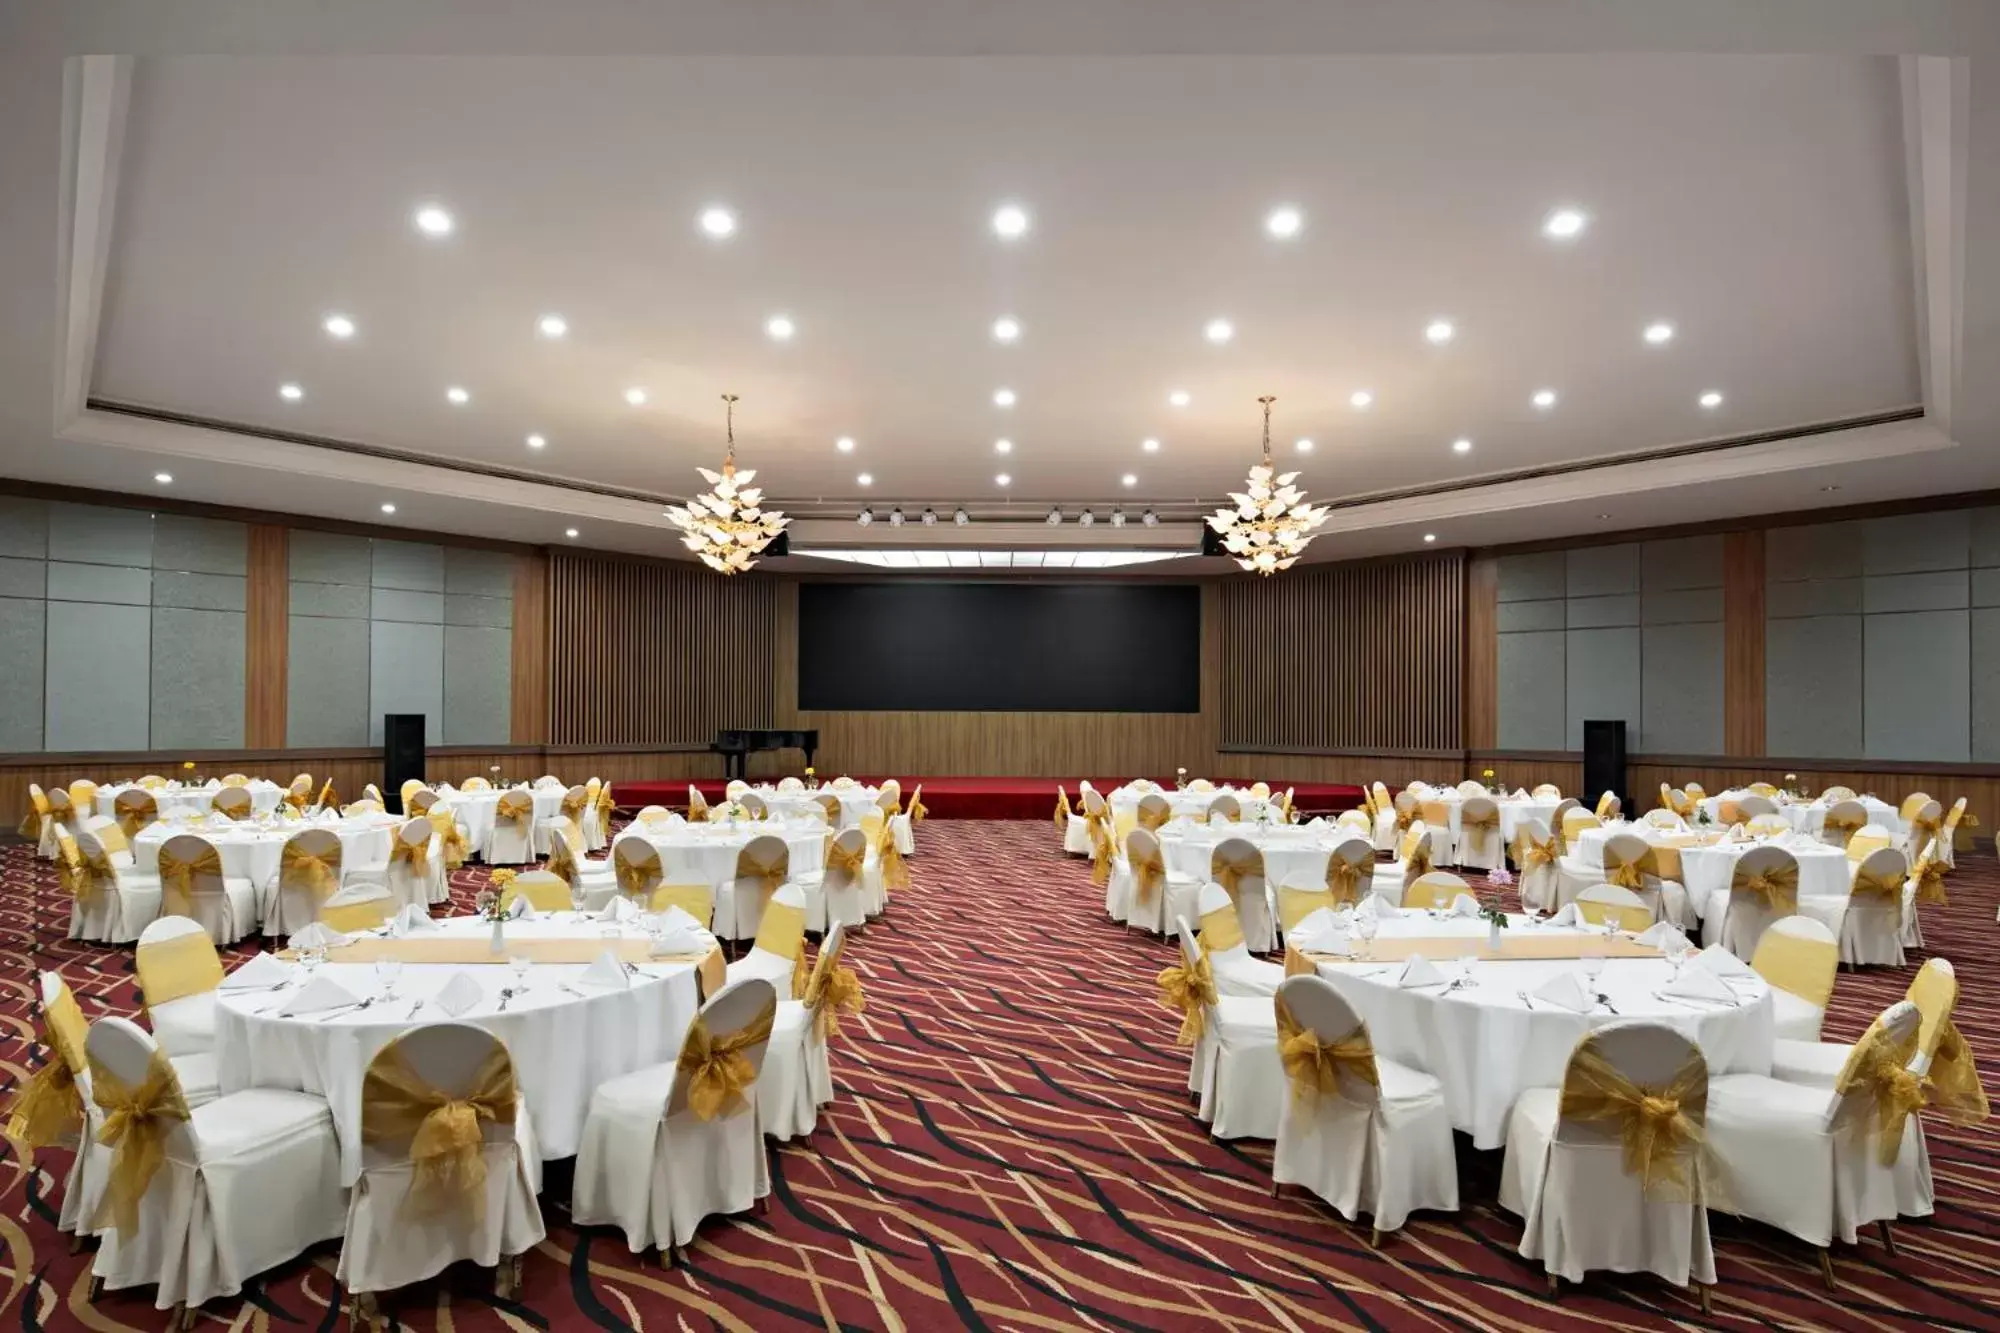 Banquet/Function facilities, Banquet Facilities in Aryaduta Manado